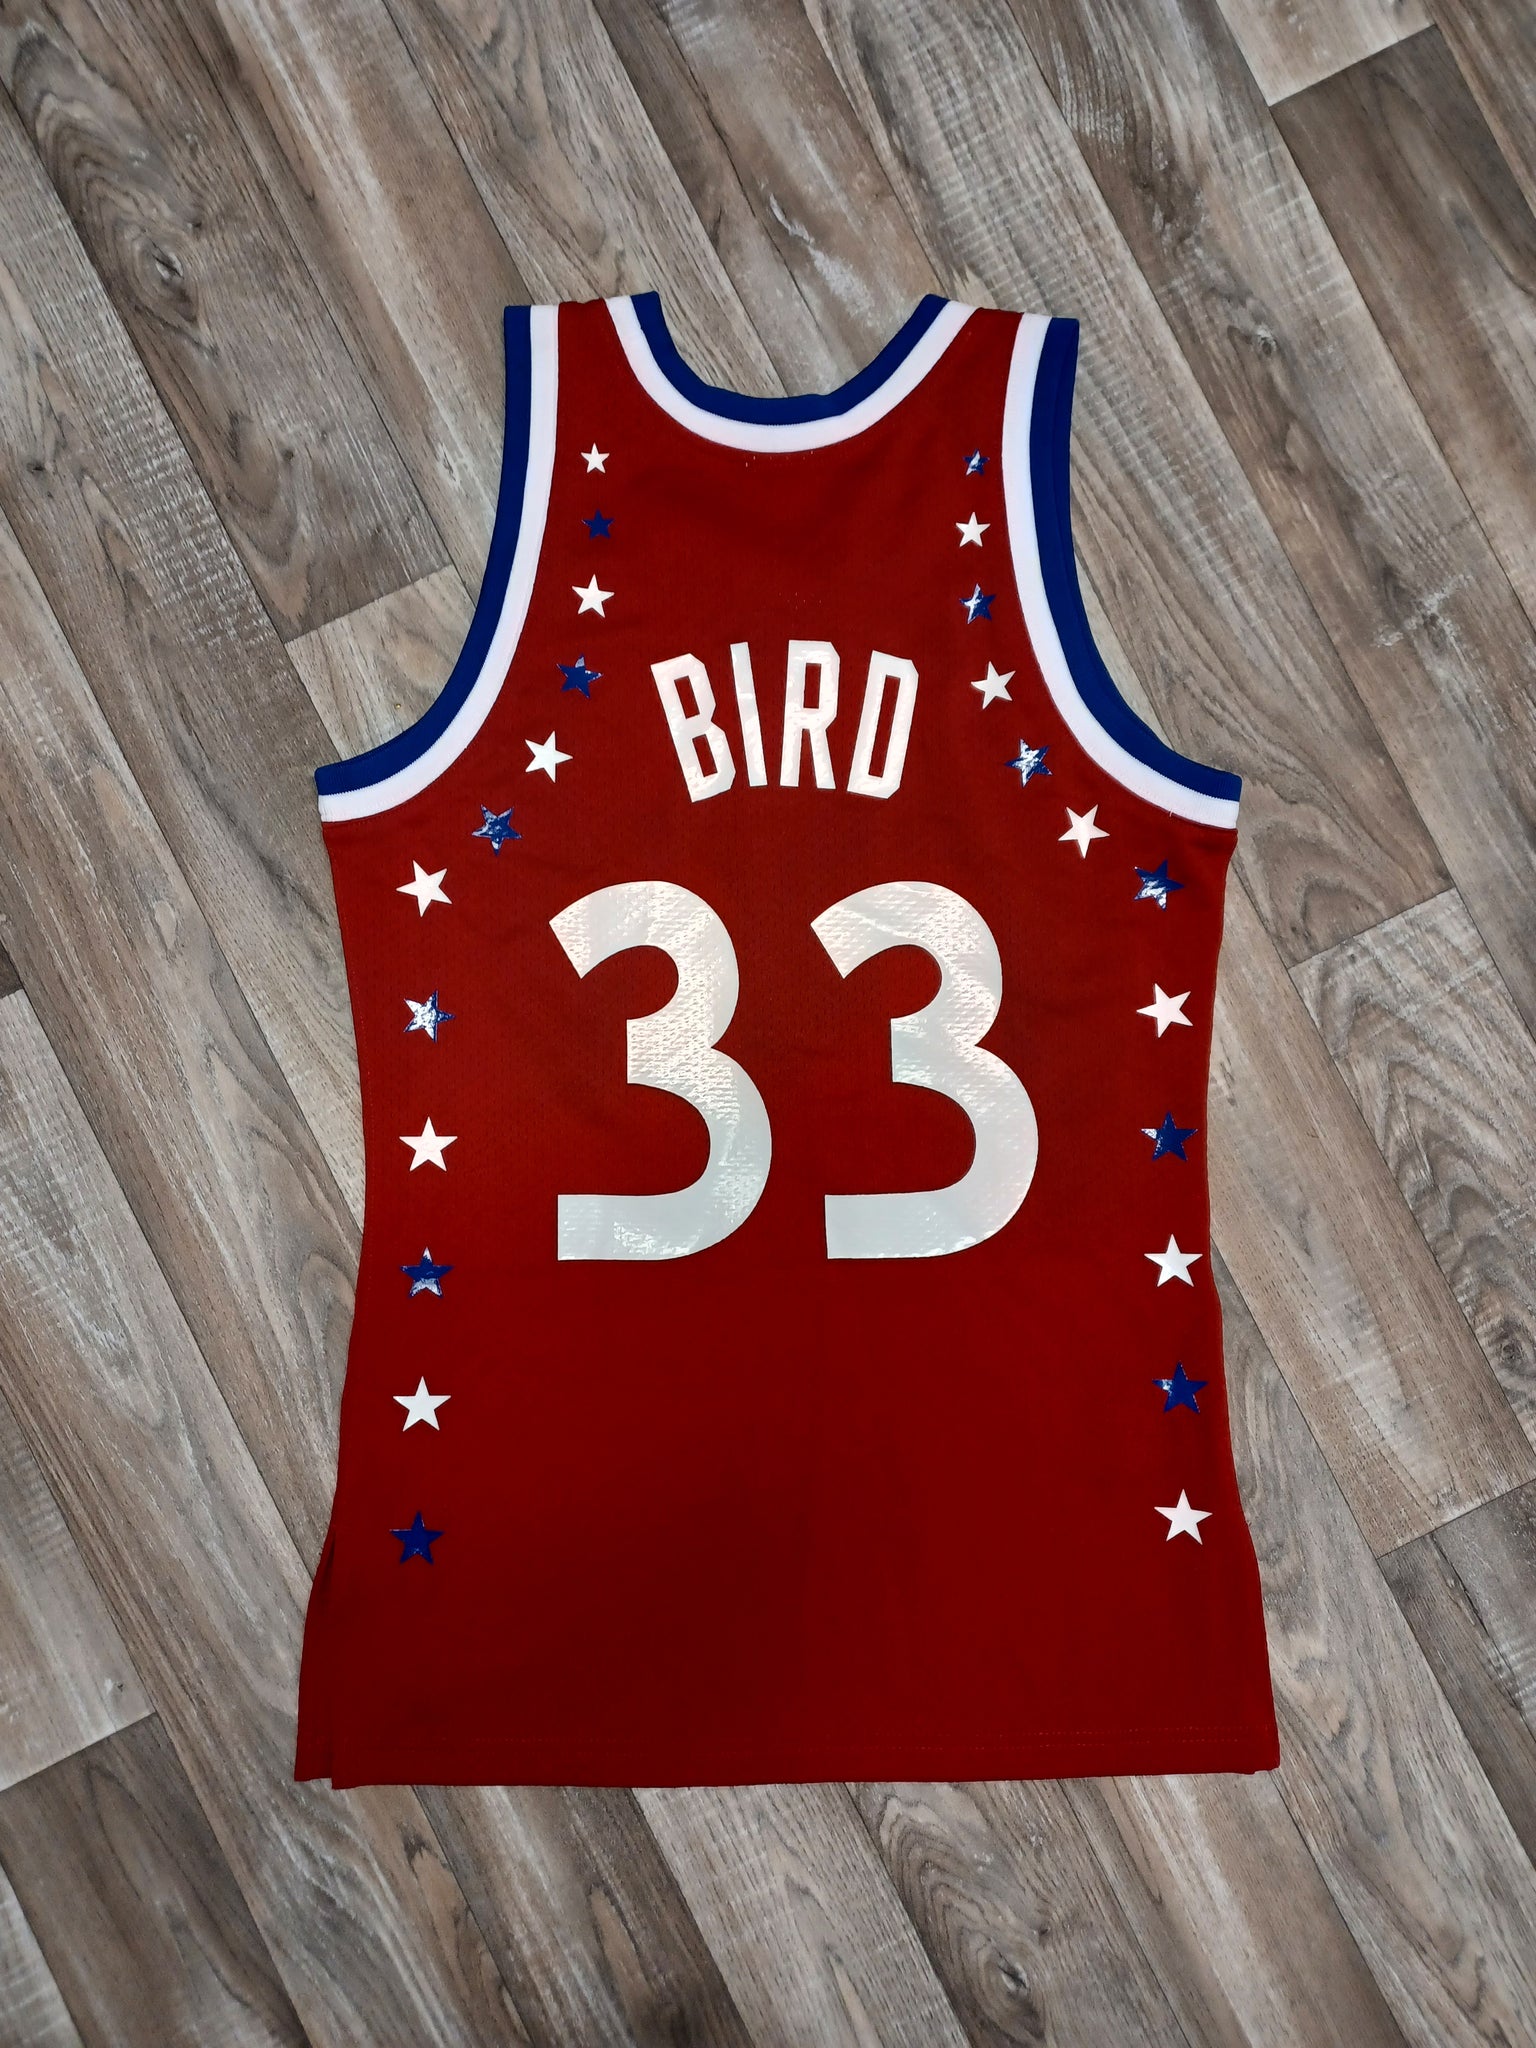 Larry Bird NBA Fan Jerseys for sale